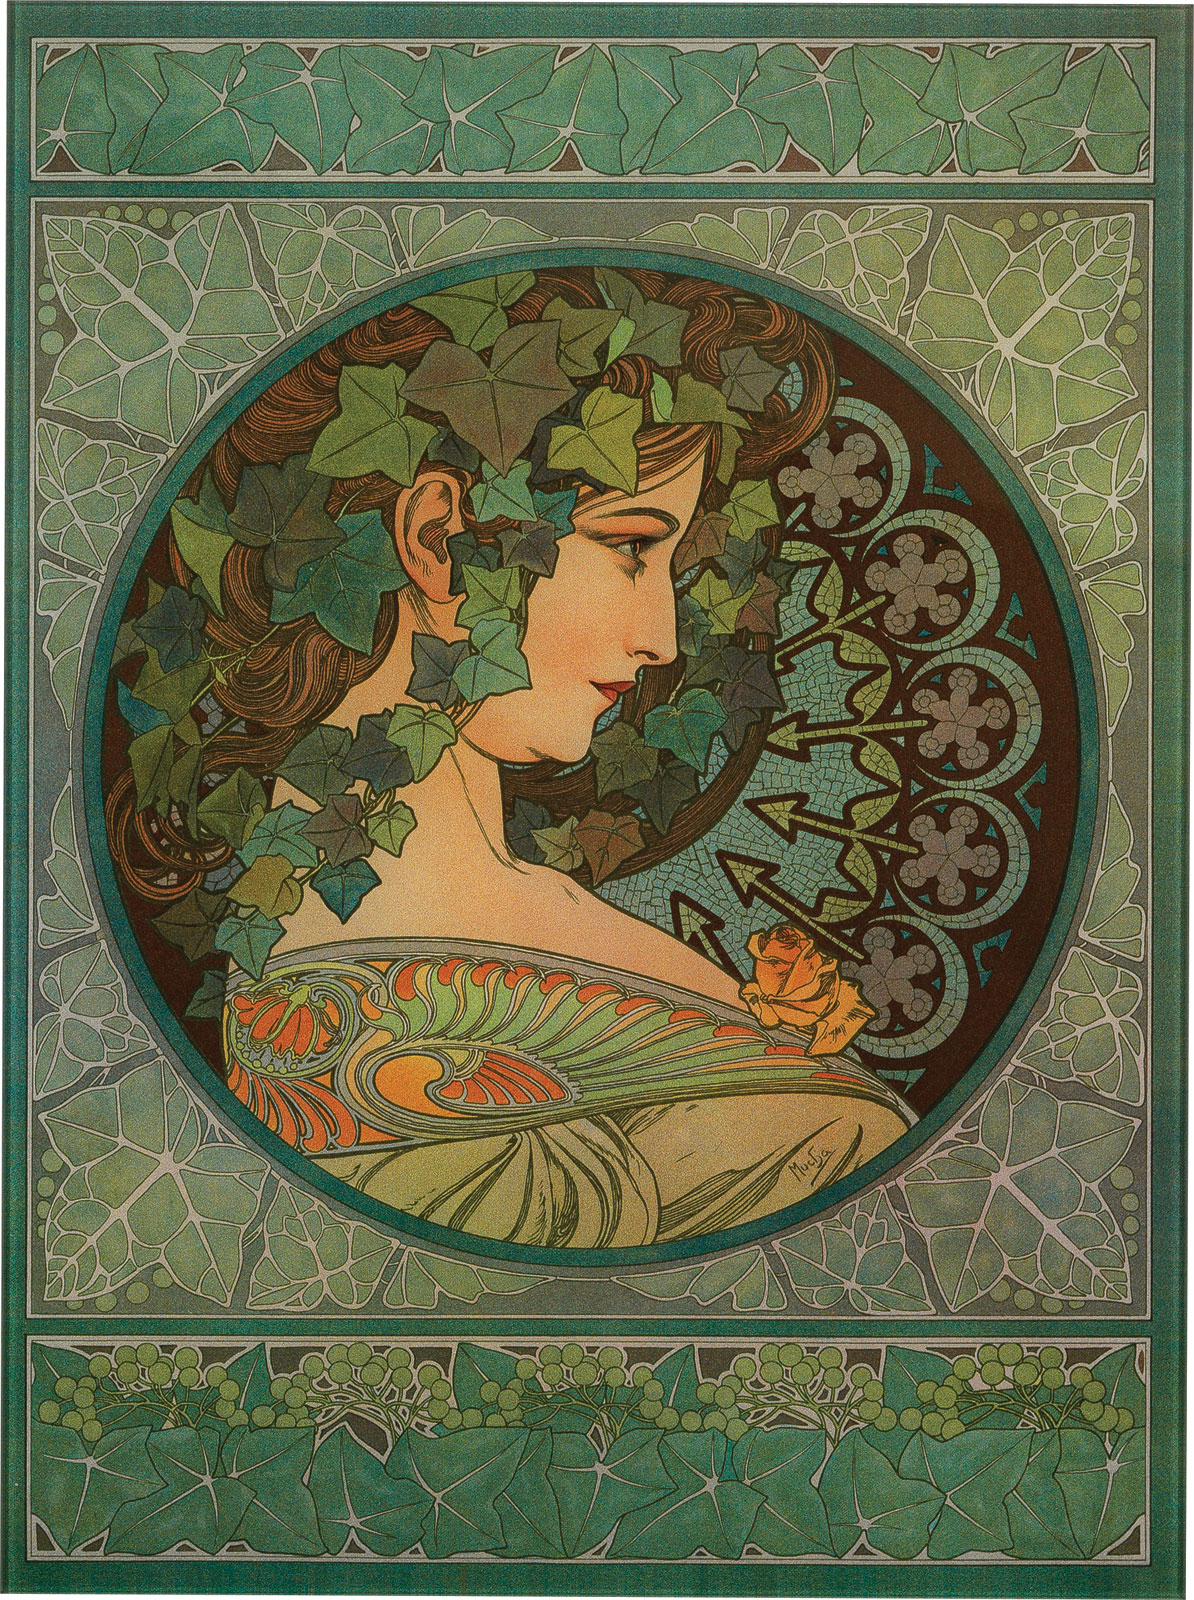 Glasbild "Efeu" (1901) by Alphonse Mucha